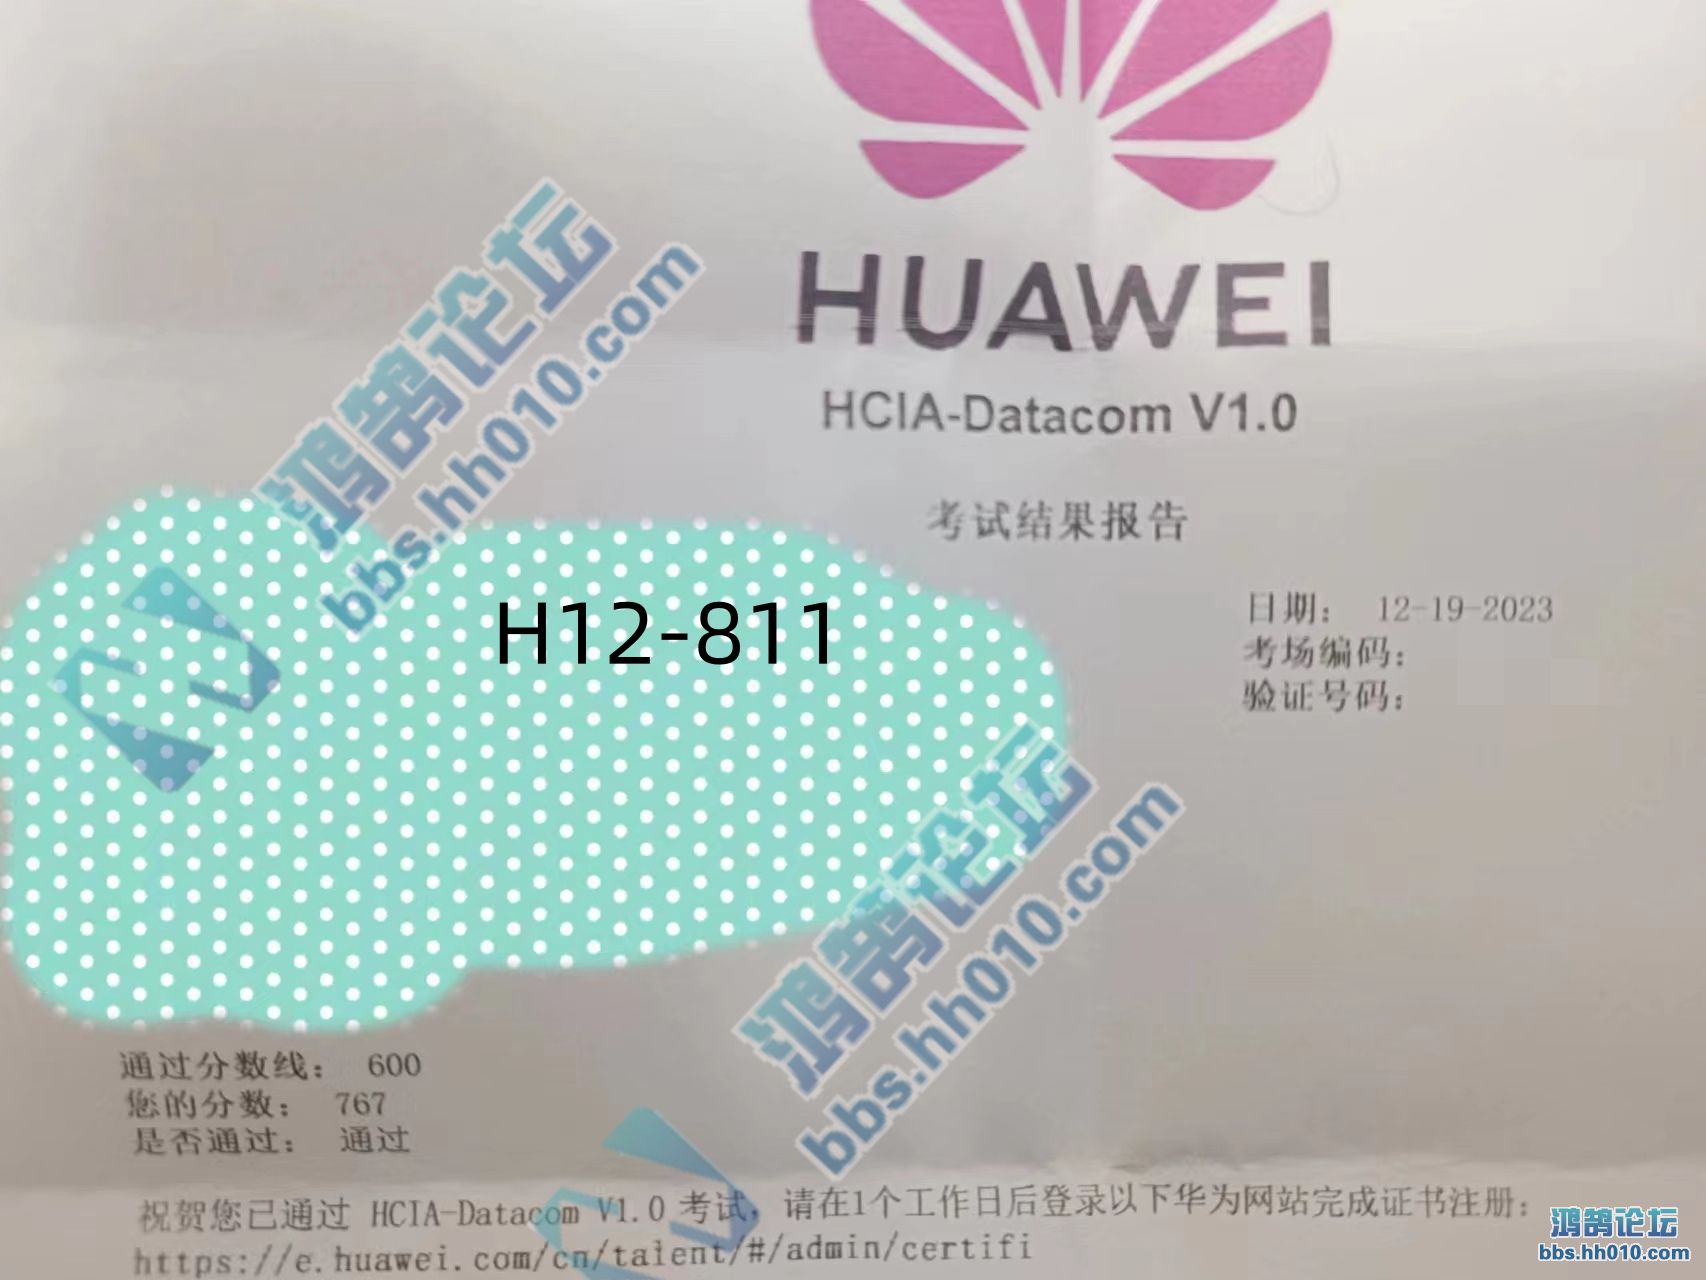 2023.12.19 HCIA Datacom H12-811 PASS.jpg